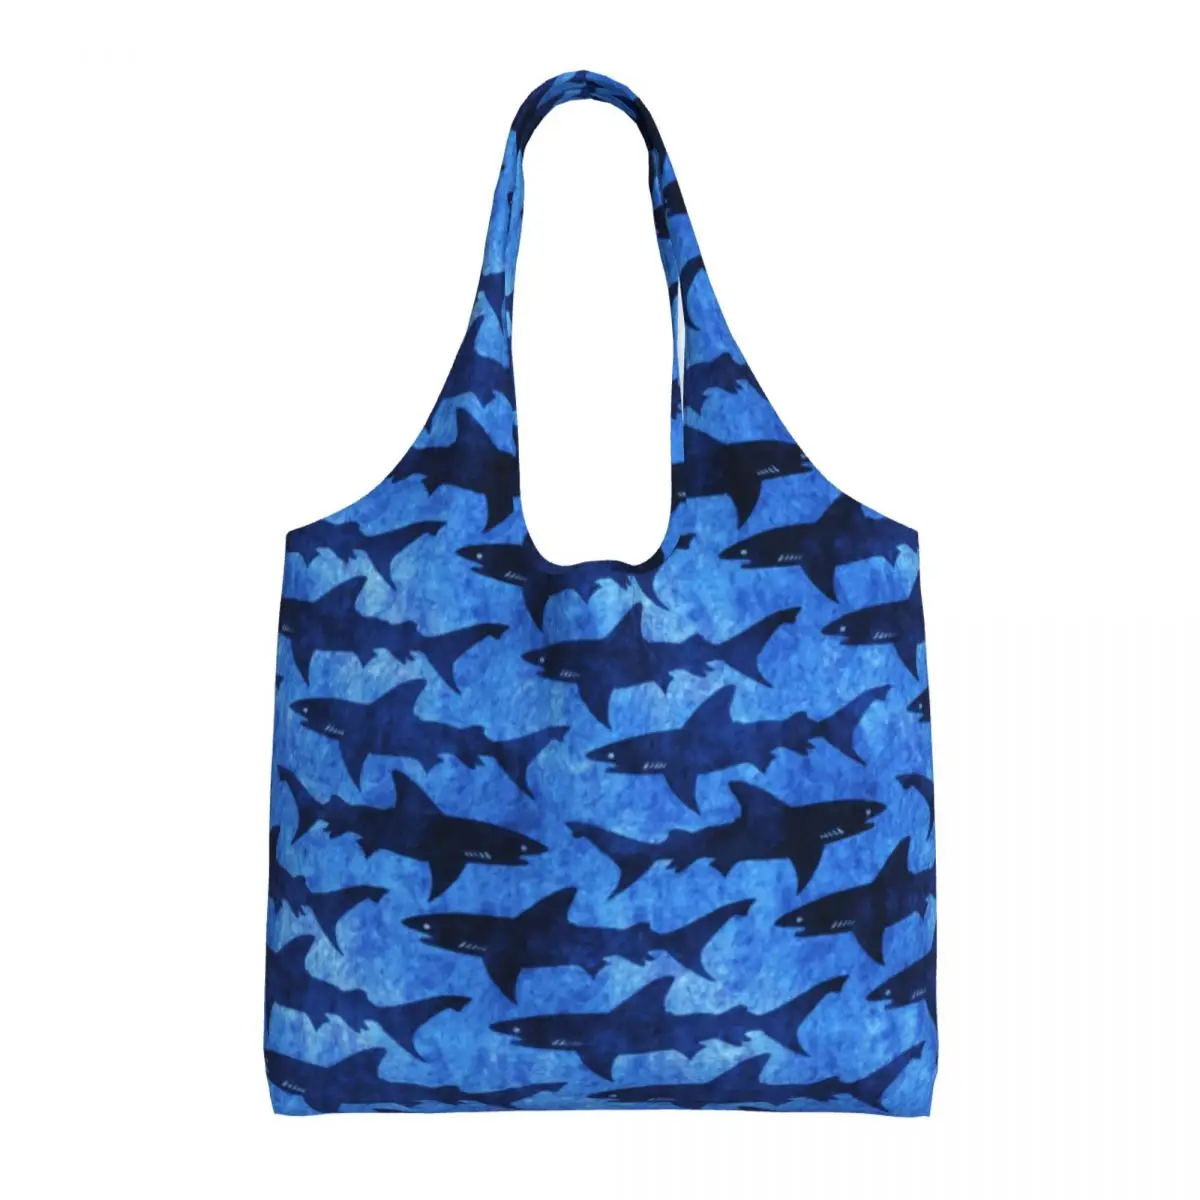 

Забавная сумка для покупок с акулами в глубоком синем море Офисные Сумки из полиэстера женские стильные сумки оптом